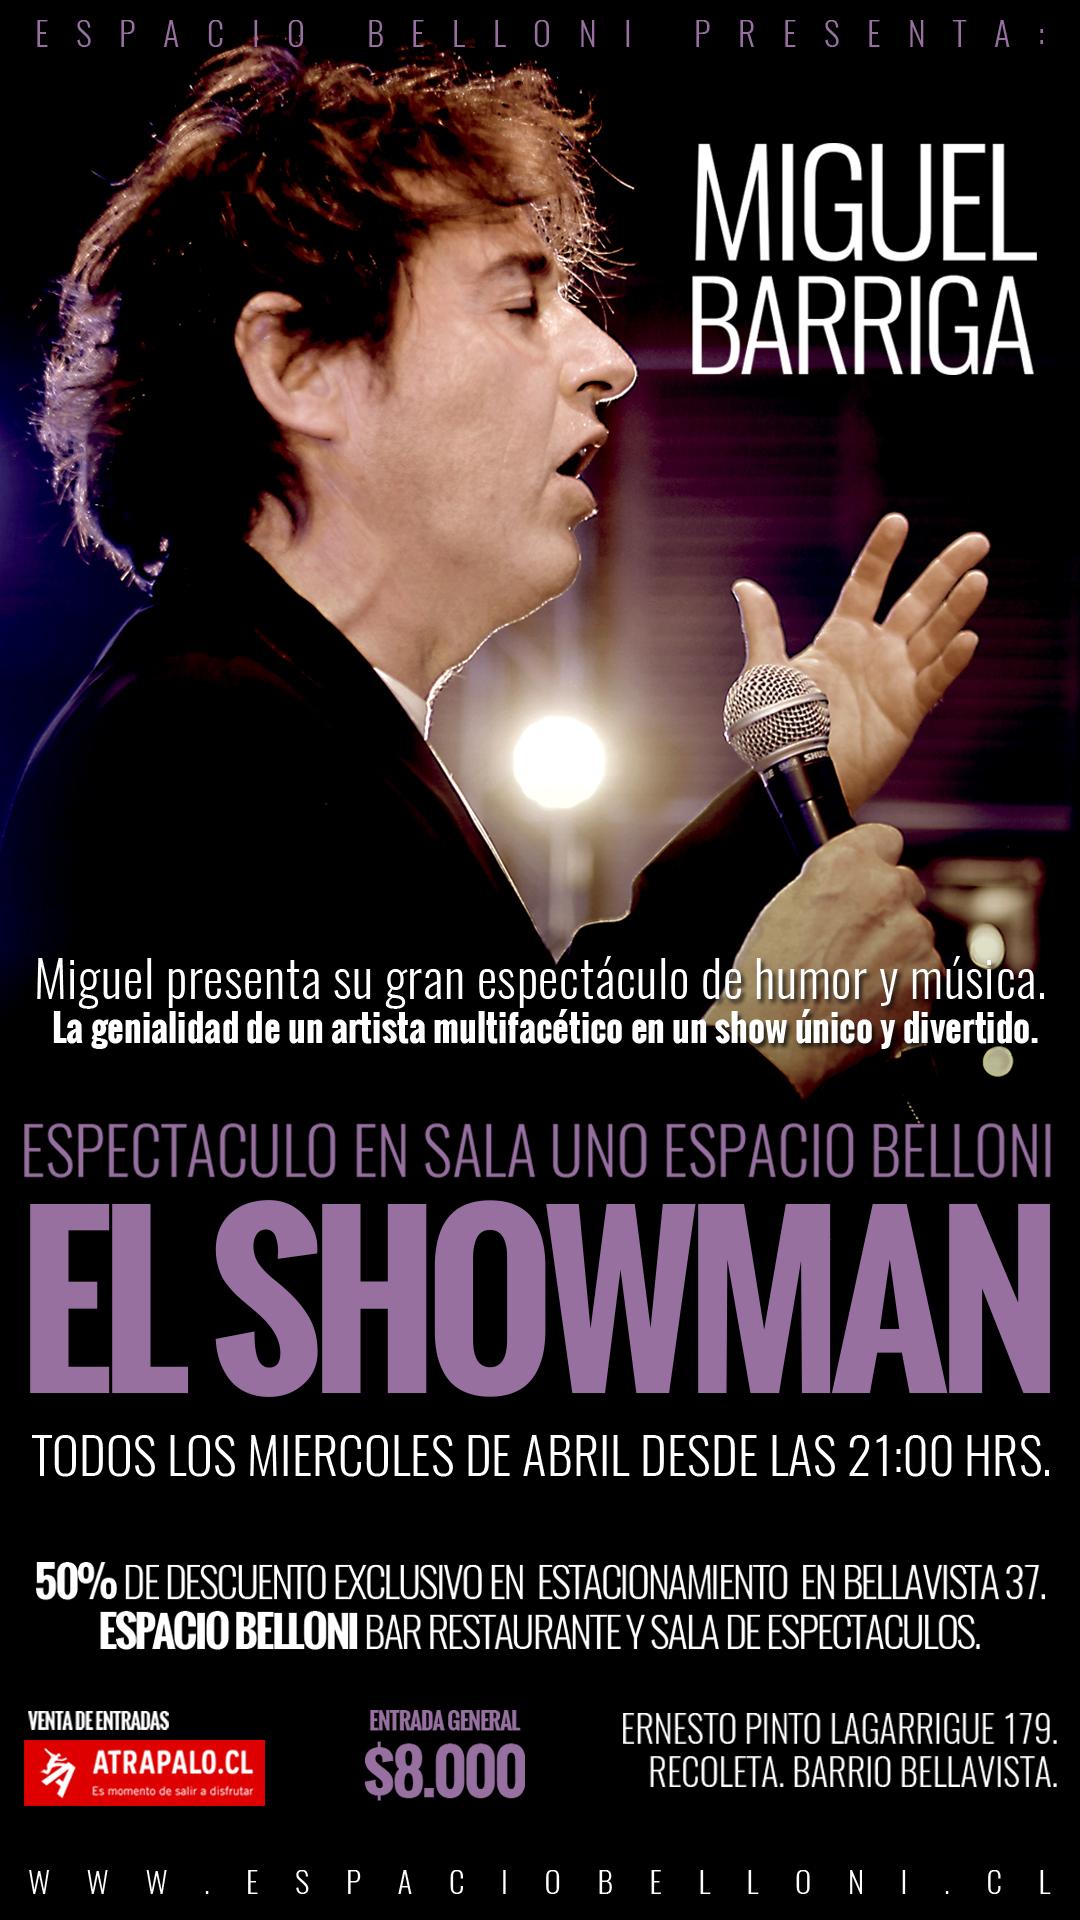 El Showman - Miguel Barriga en Espacio Belloni